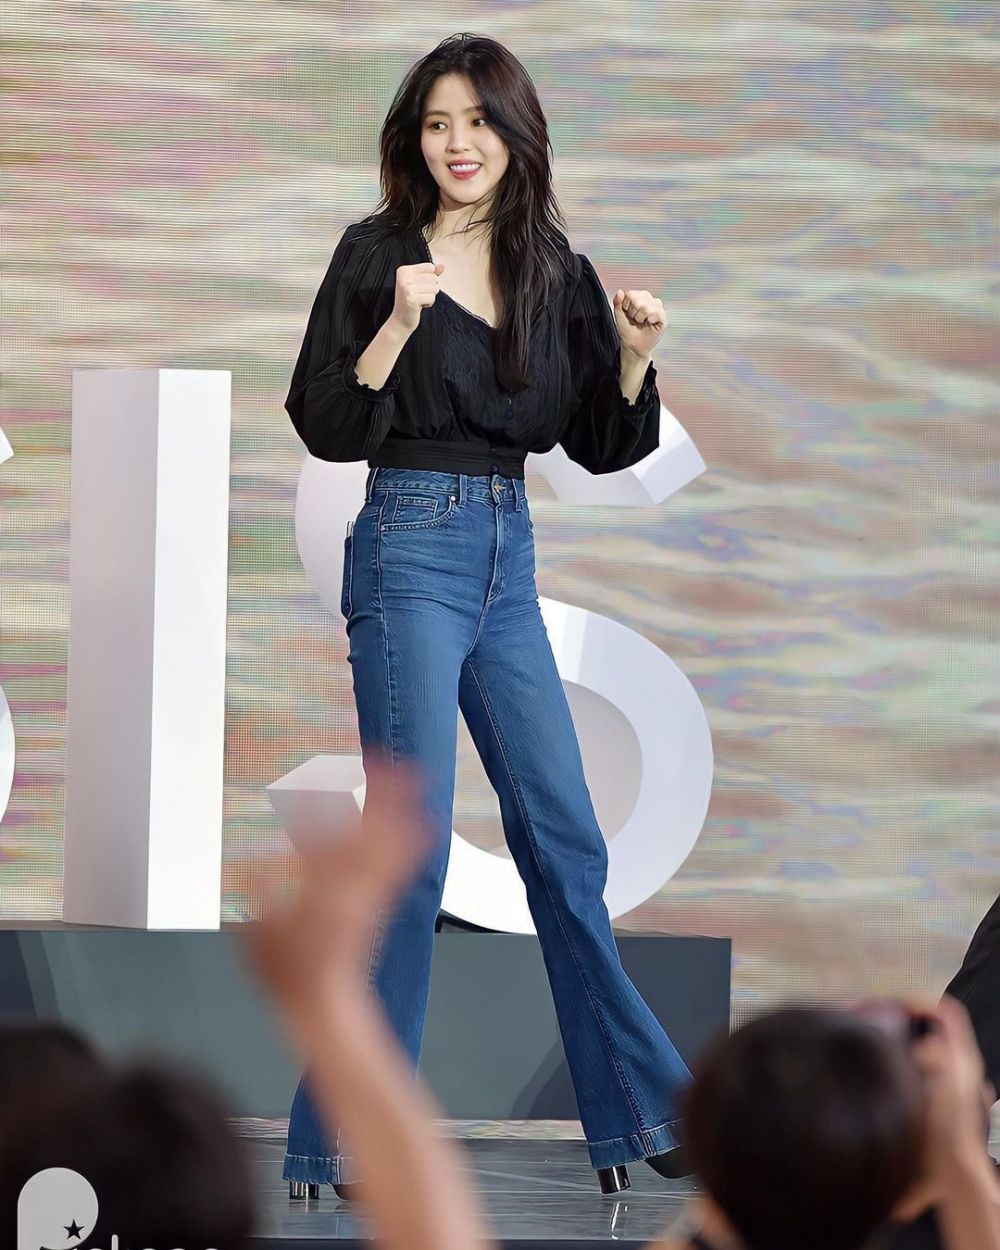 Phong cách diện quần jeans của Han So Hee: Phối đồ dịu dàng hay cá tính cũng đều đẹp xuất sắc - Ảnh 1.